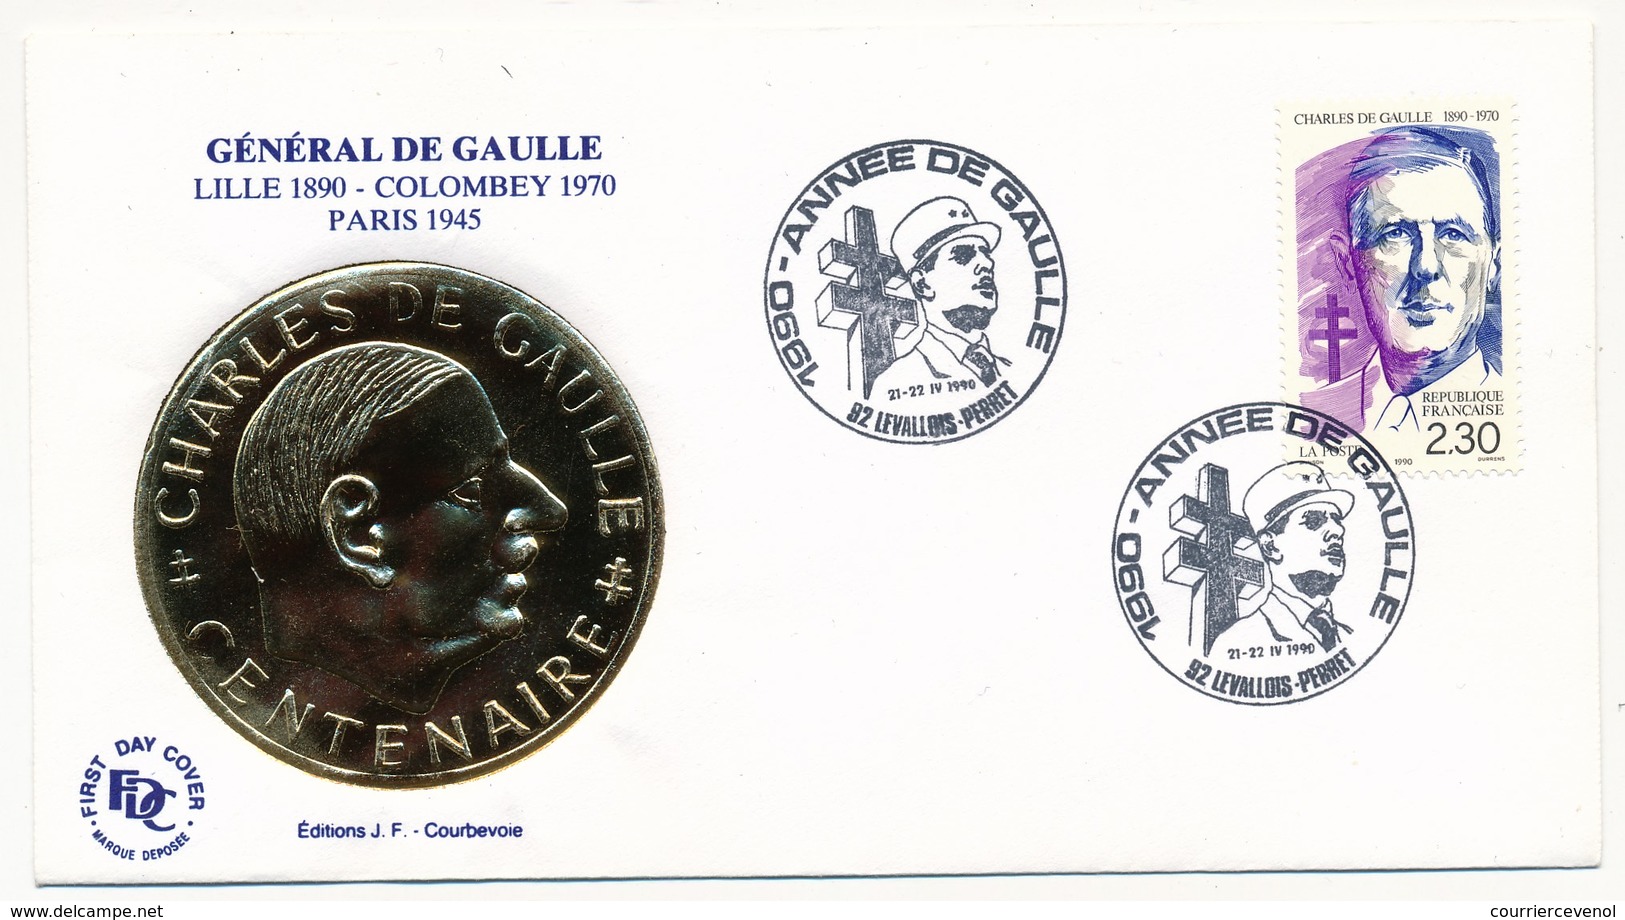 FRANCE - Enveloppe - Cachet Temporaire "1990 Année De Gaulle" - Levallois Perret  - 21/22.4.1990 - De Gaulle (General)